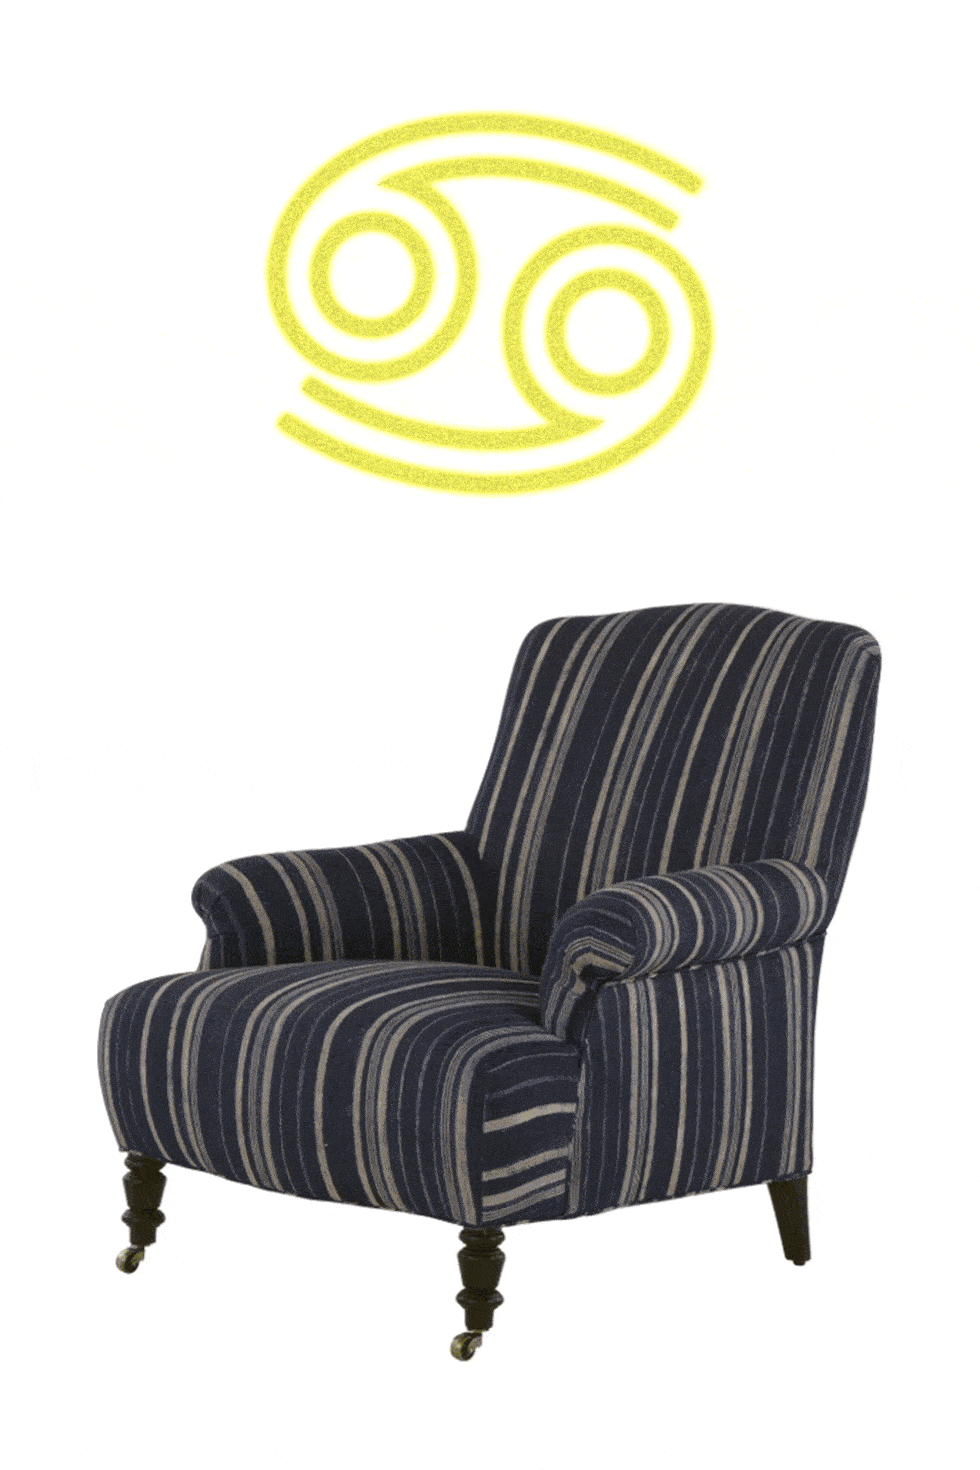 Furniture, Chair, Yellow, Club chair, 